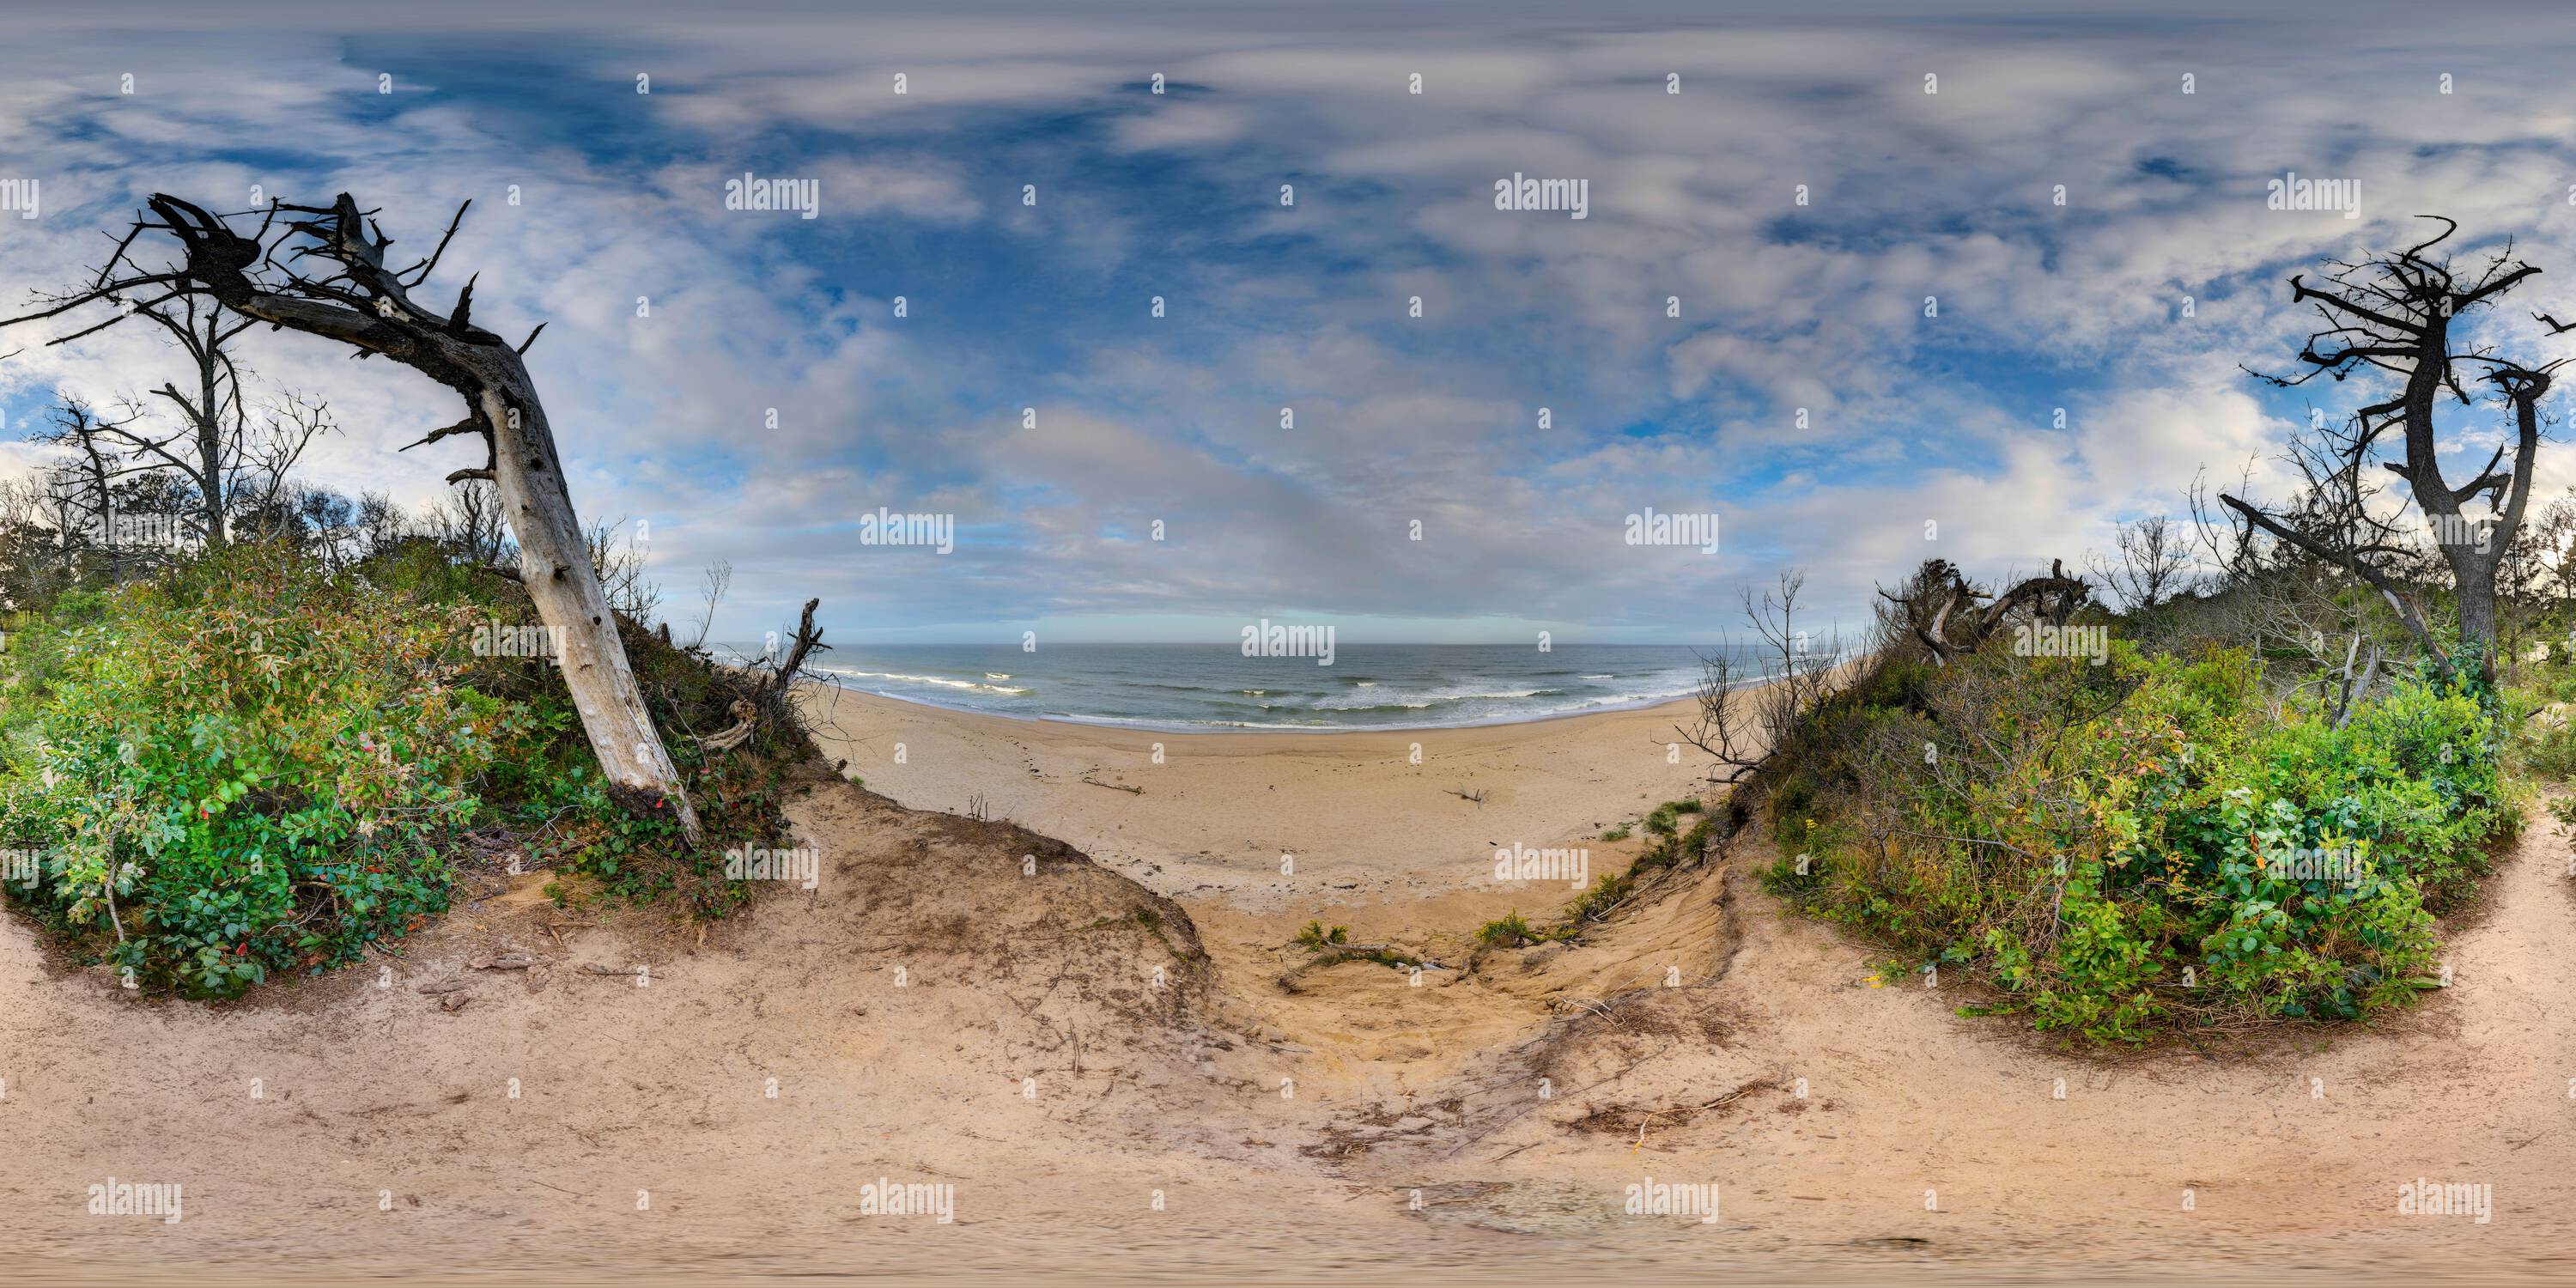 Vue panoramique à 360° de Un Equirectangulaire panoramique, 360 VR de l'océan Atlantique.